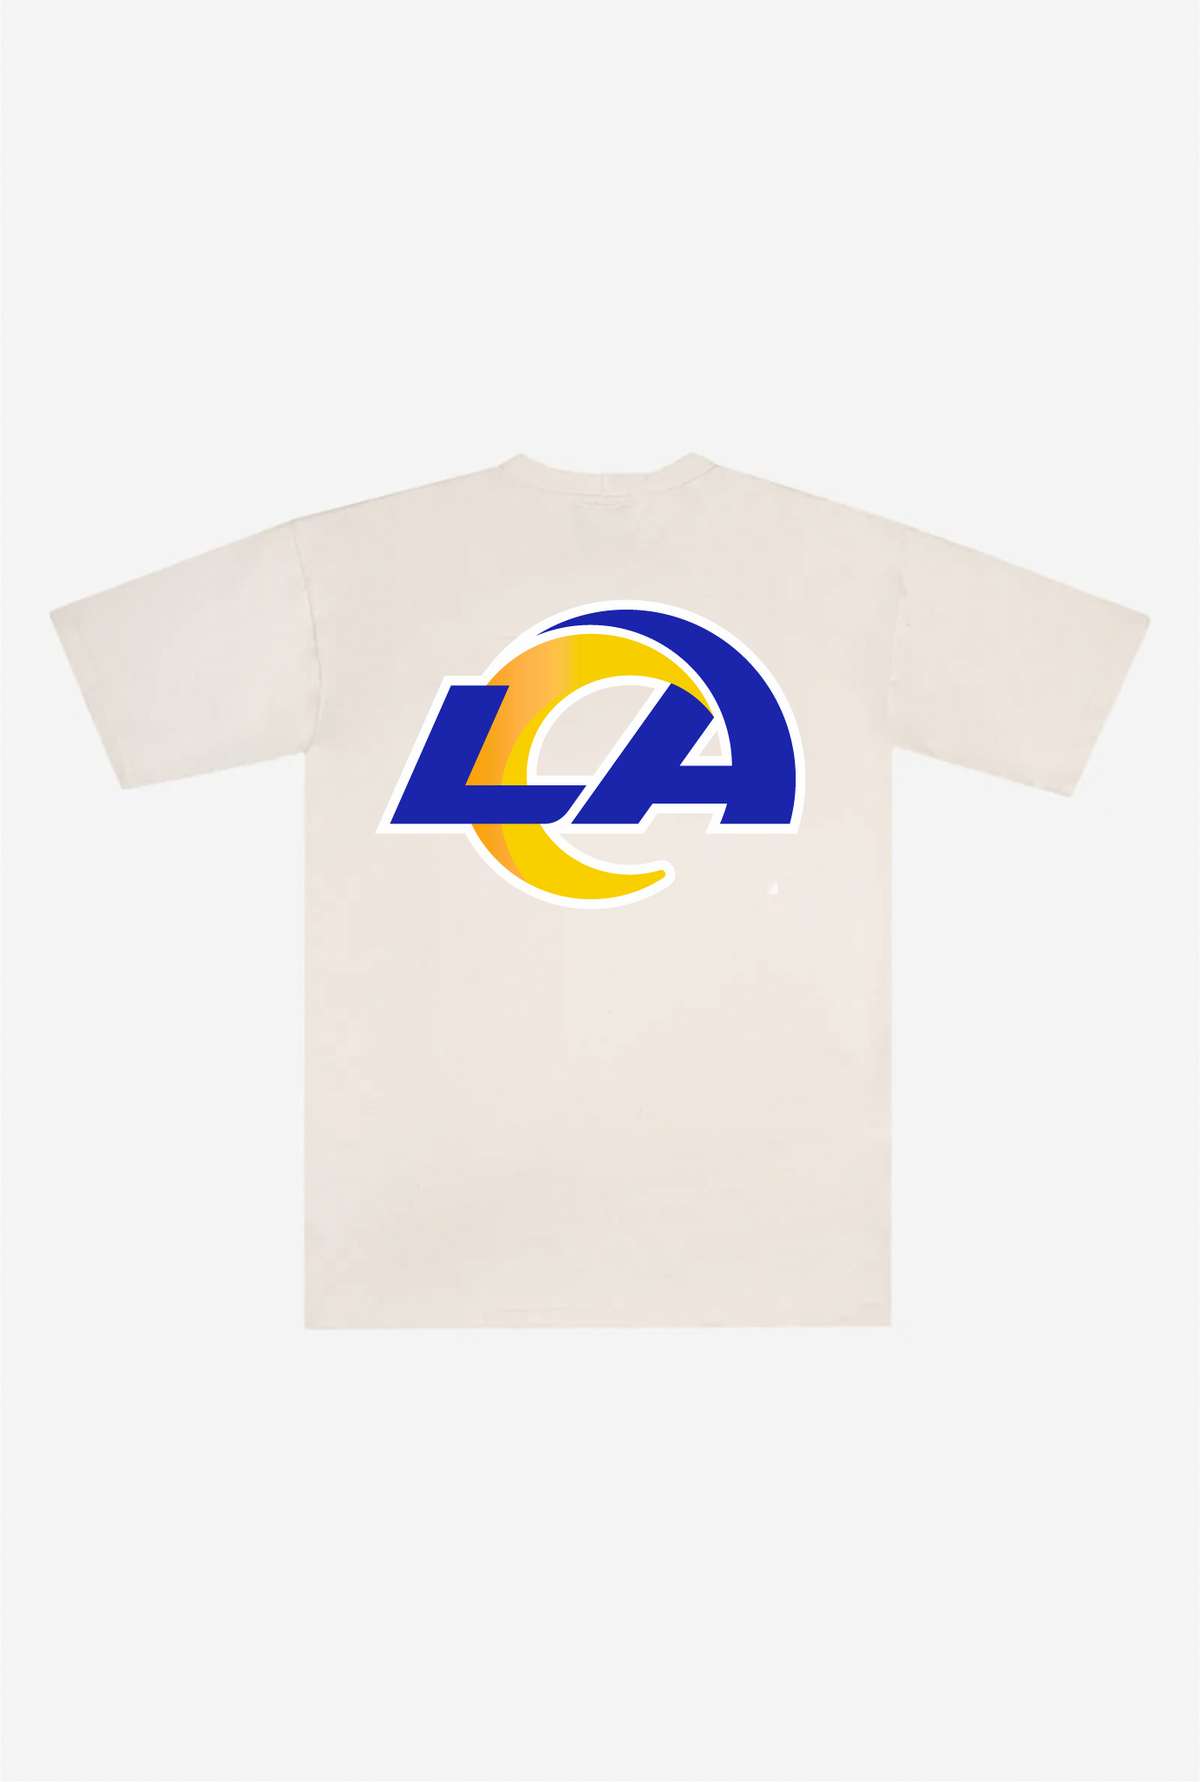 Los Angeles Rams Heavyweight T-Shirt - Natural